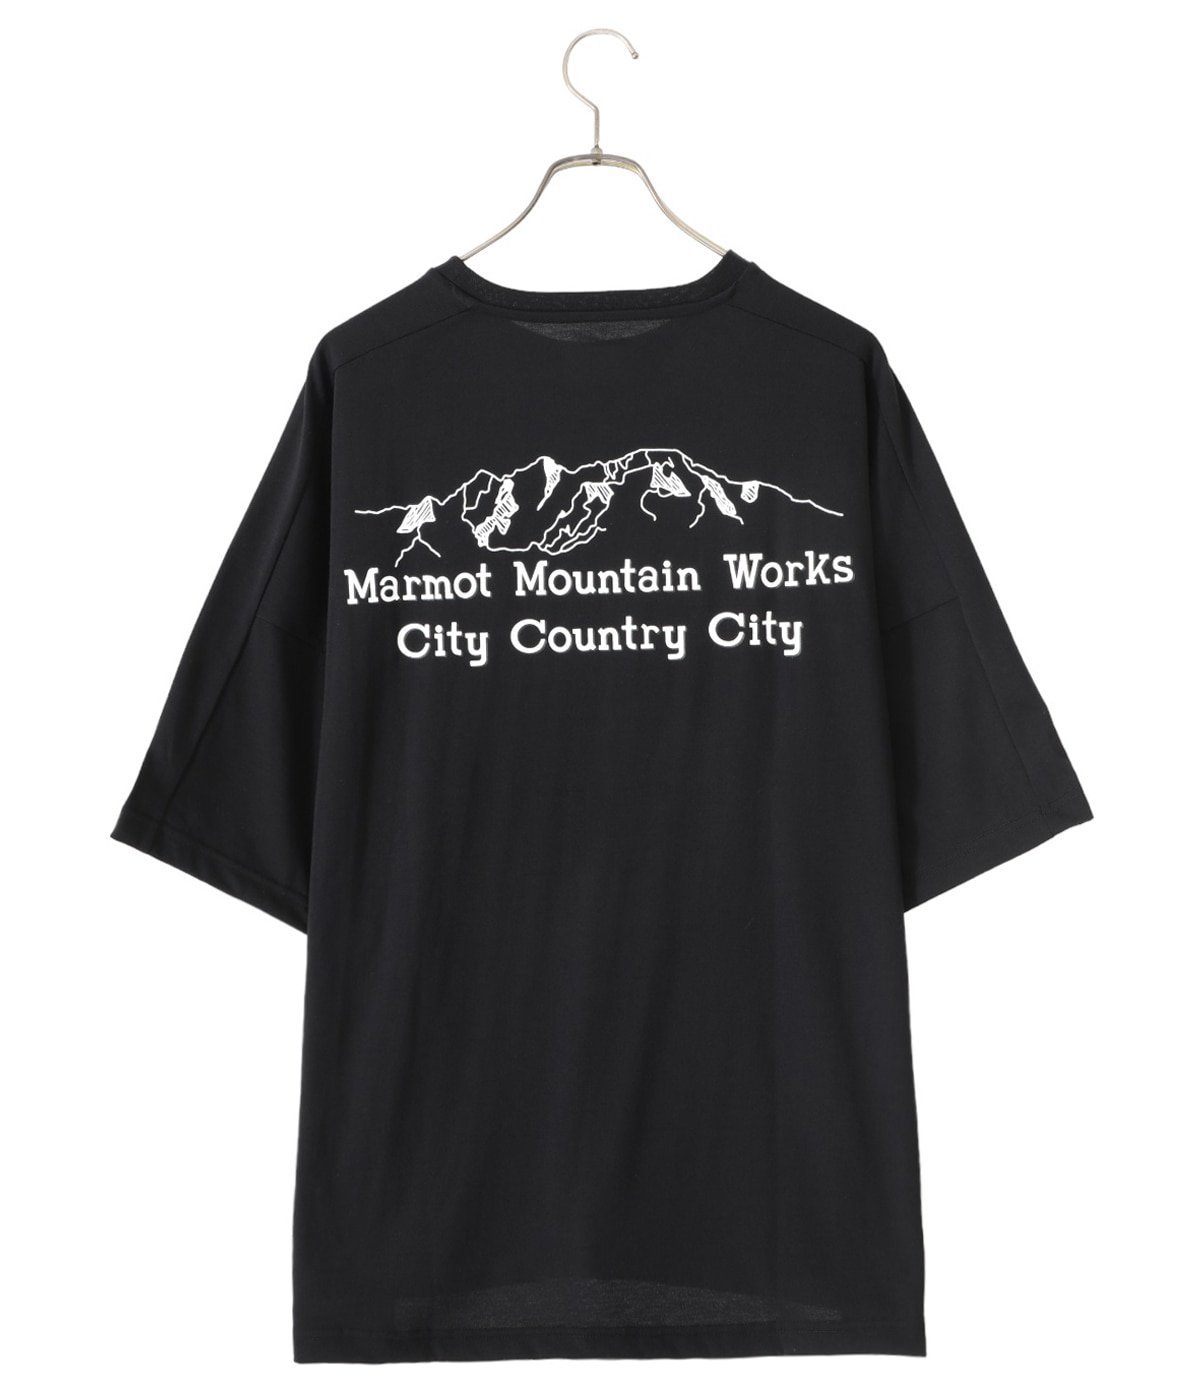 CITY COUNTRY CITY Marmot ビッグサイズ Tシャツ - Tシャツ/カットソー 